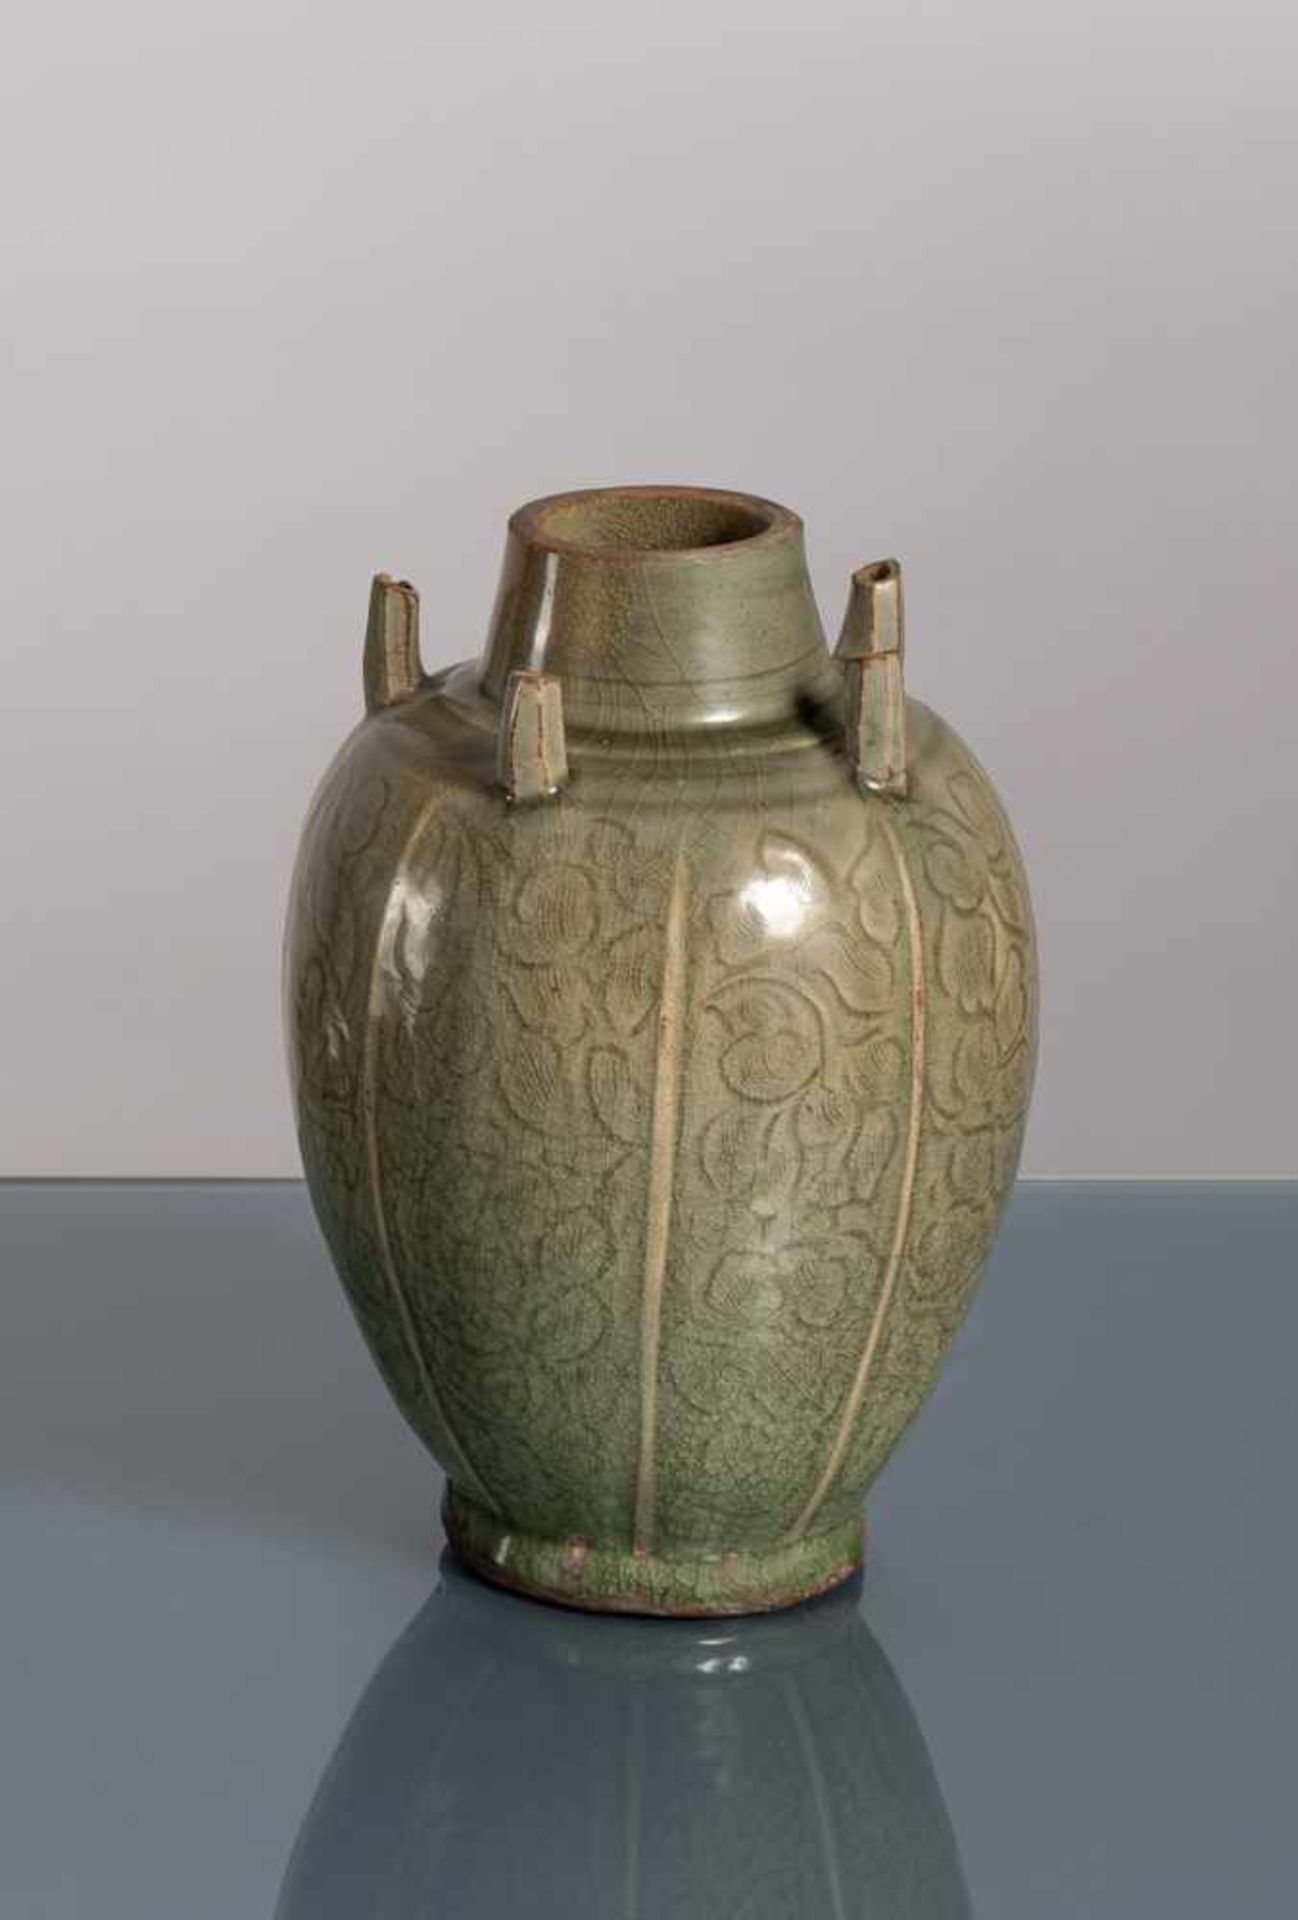 Seltene achtfach gelappte Vase mit fünf röhrenförmigen Auslässen, seladonfarben glasiert